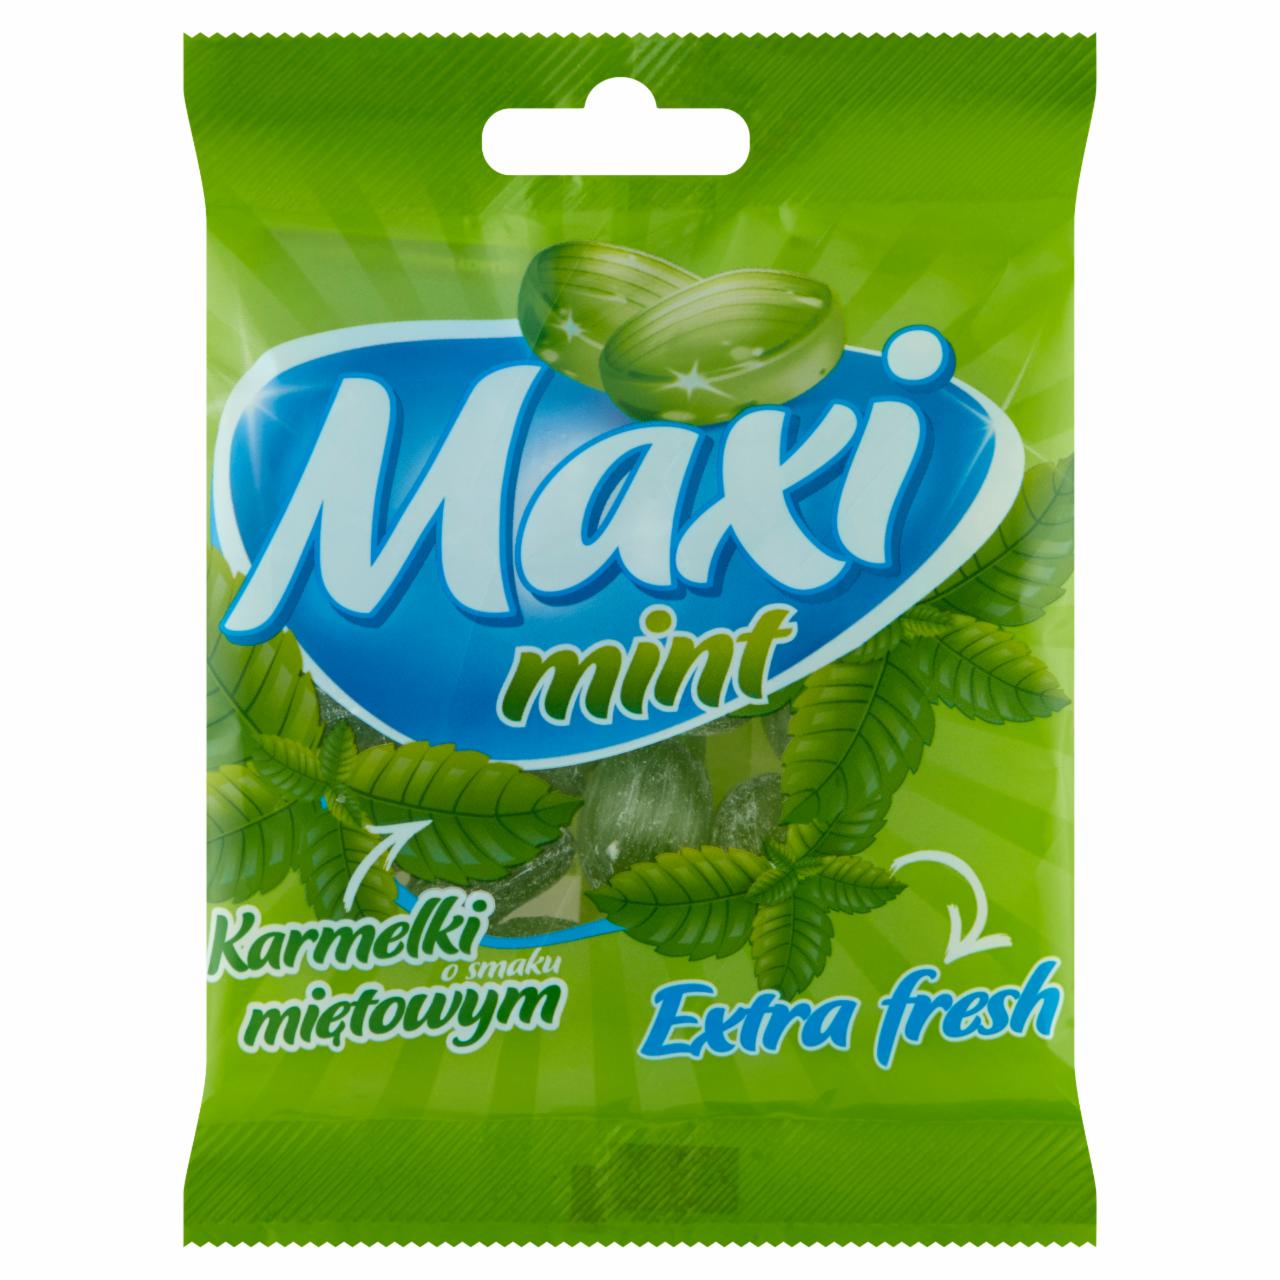 Zdjęcia - Maxi Mint Karmelki o smaku miętowym 80 g